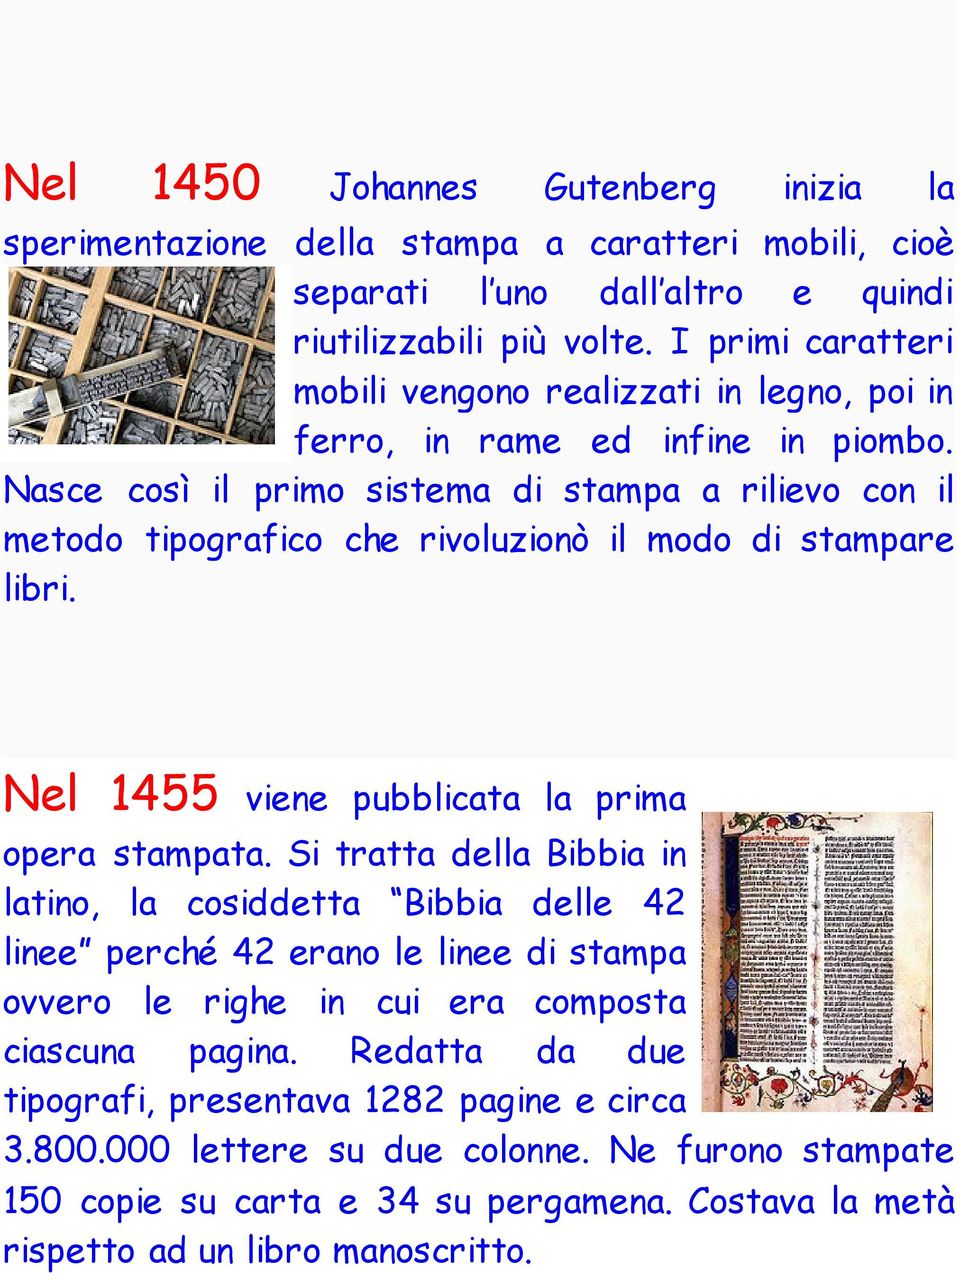 Nasce così il primo sistema di stampa a rilievo con il metodo tipografico che rivoluzionò il modo di stampare libri. Nel 1455 viene pubblicata la prima opera stampata.